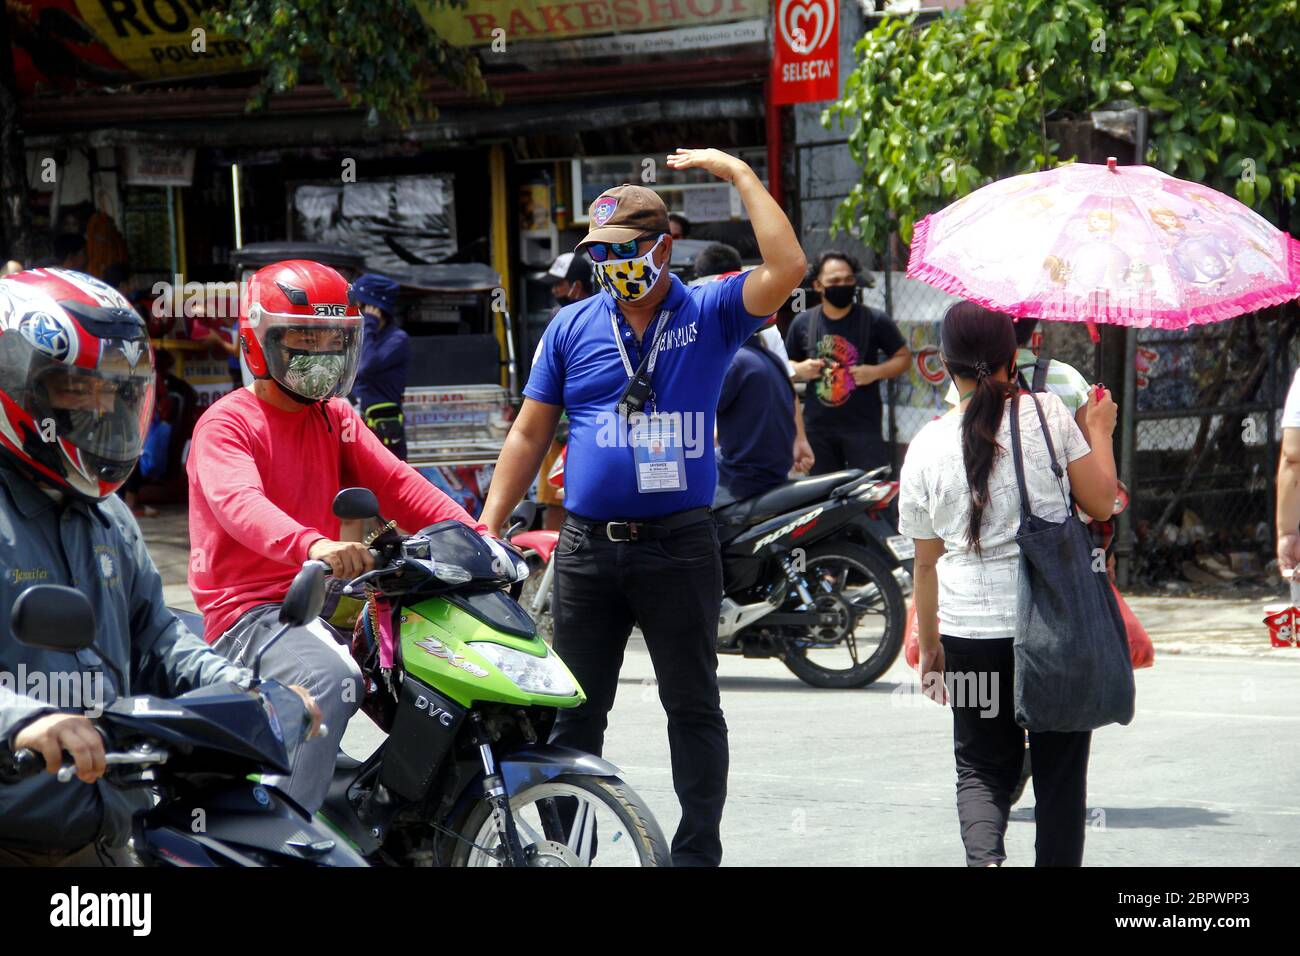 Antipolo City, Philippines - 16 mai 2020 : un policier aide les piétons après que les règles de quarantaine ont été assouplies après un quar communautaire amélioré de deux mois Banque D'Images